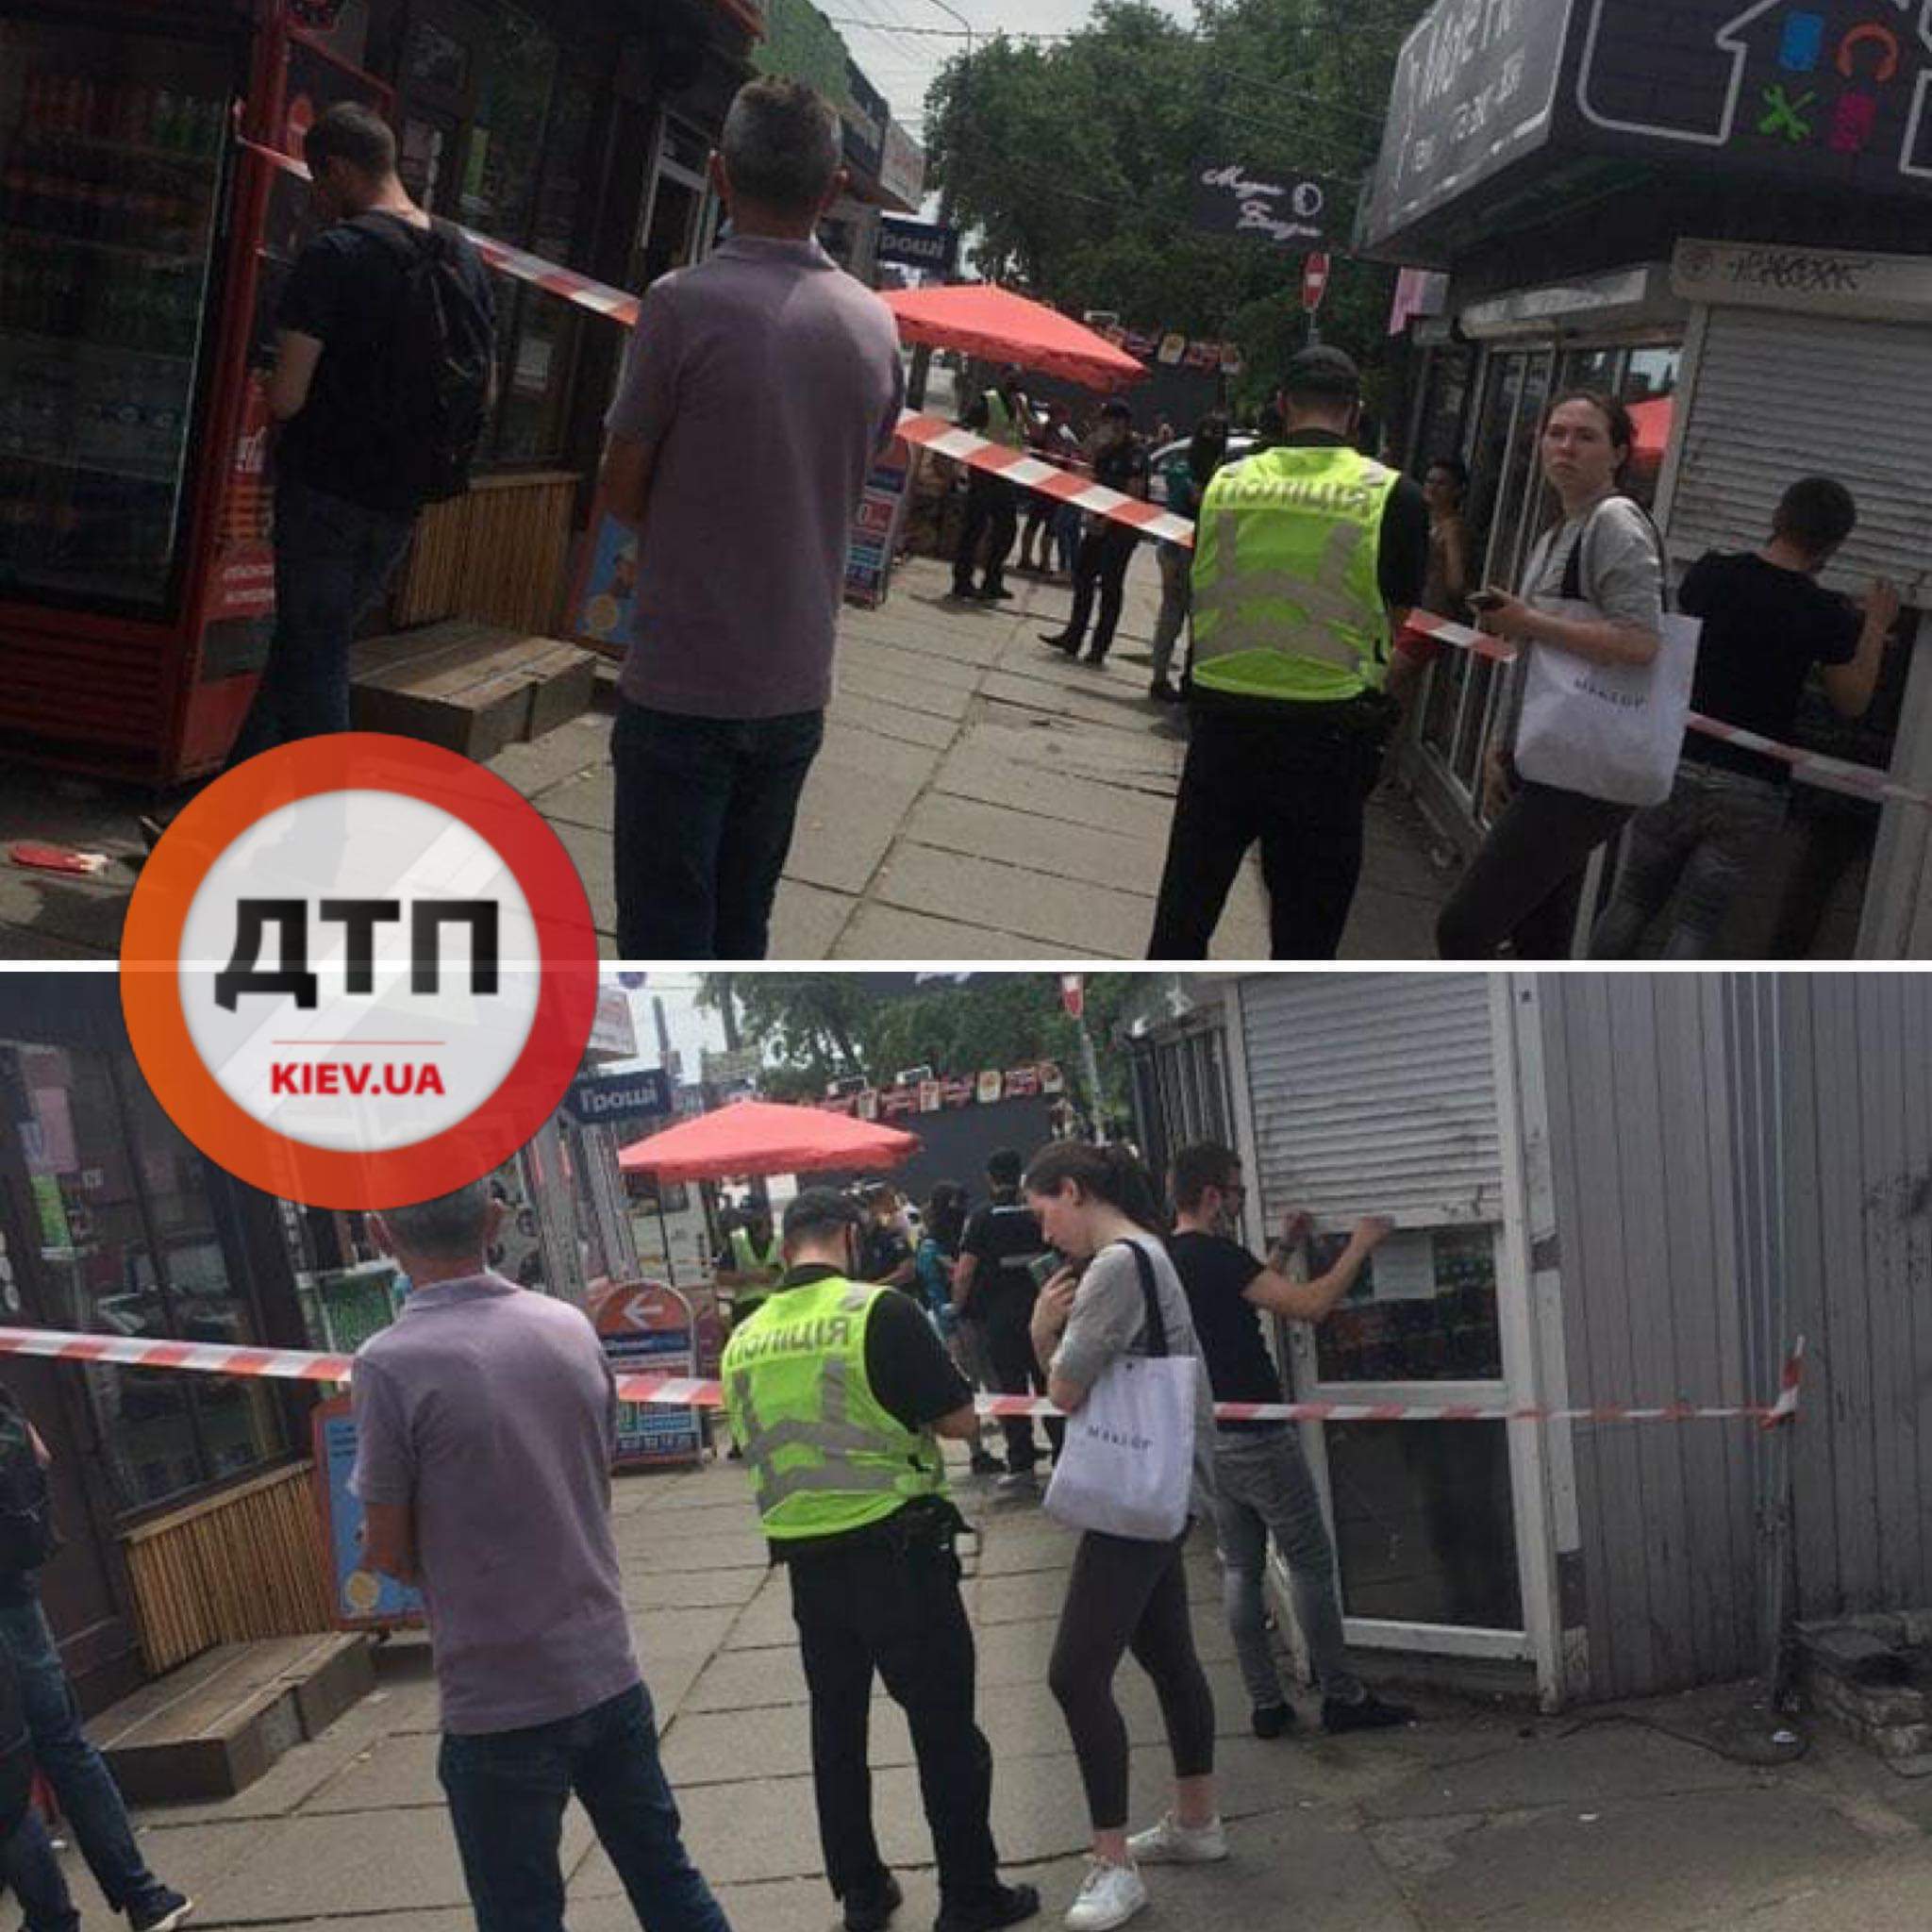 В Киеве на Черниговской отделение финансовой организации "Швидко гороші" оцепили полицейские и инкассаторы